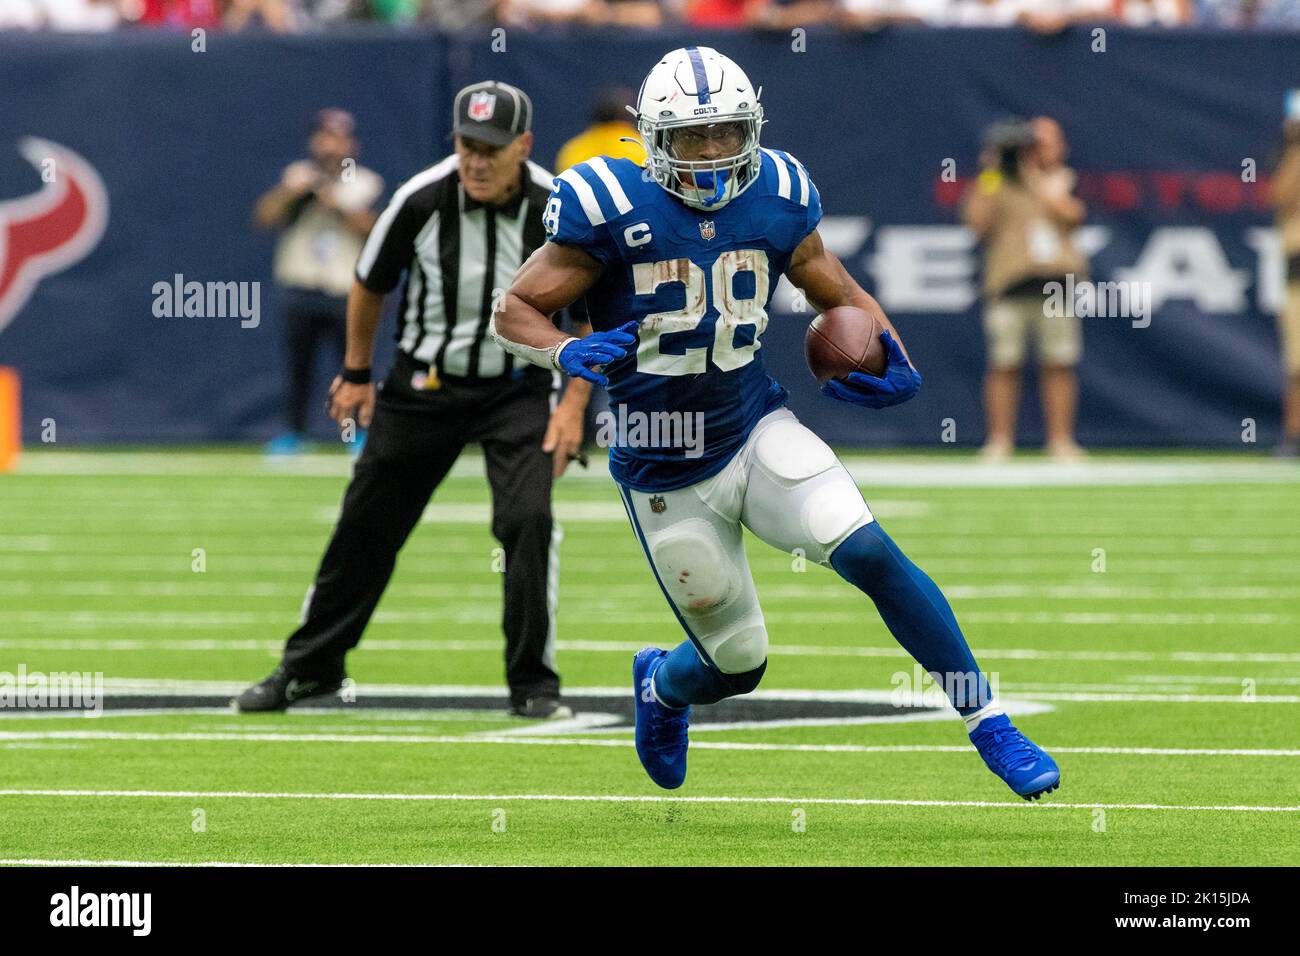 Die iIndianapolis Colts laufen zurück Jonathan Taylor (28) läuft während des NFL-Fußballspiels zwischen den Indianapolis Colts und den Houst auf dem freien Feld Stockfoto